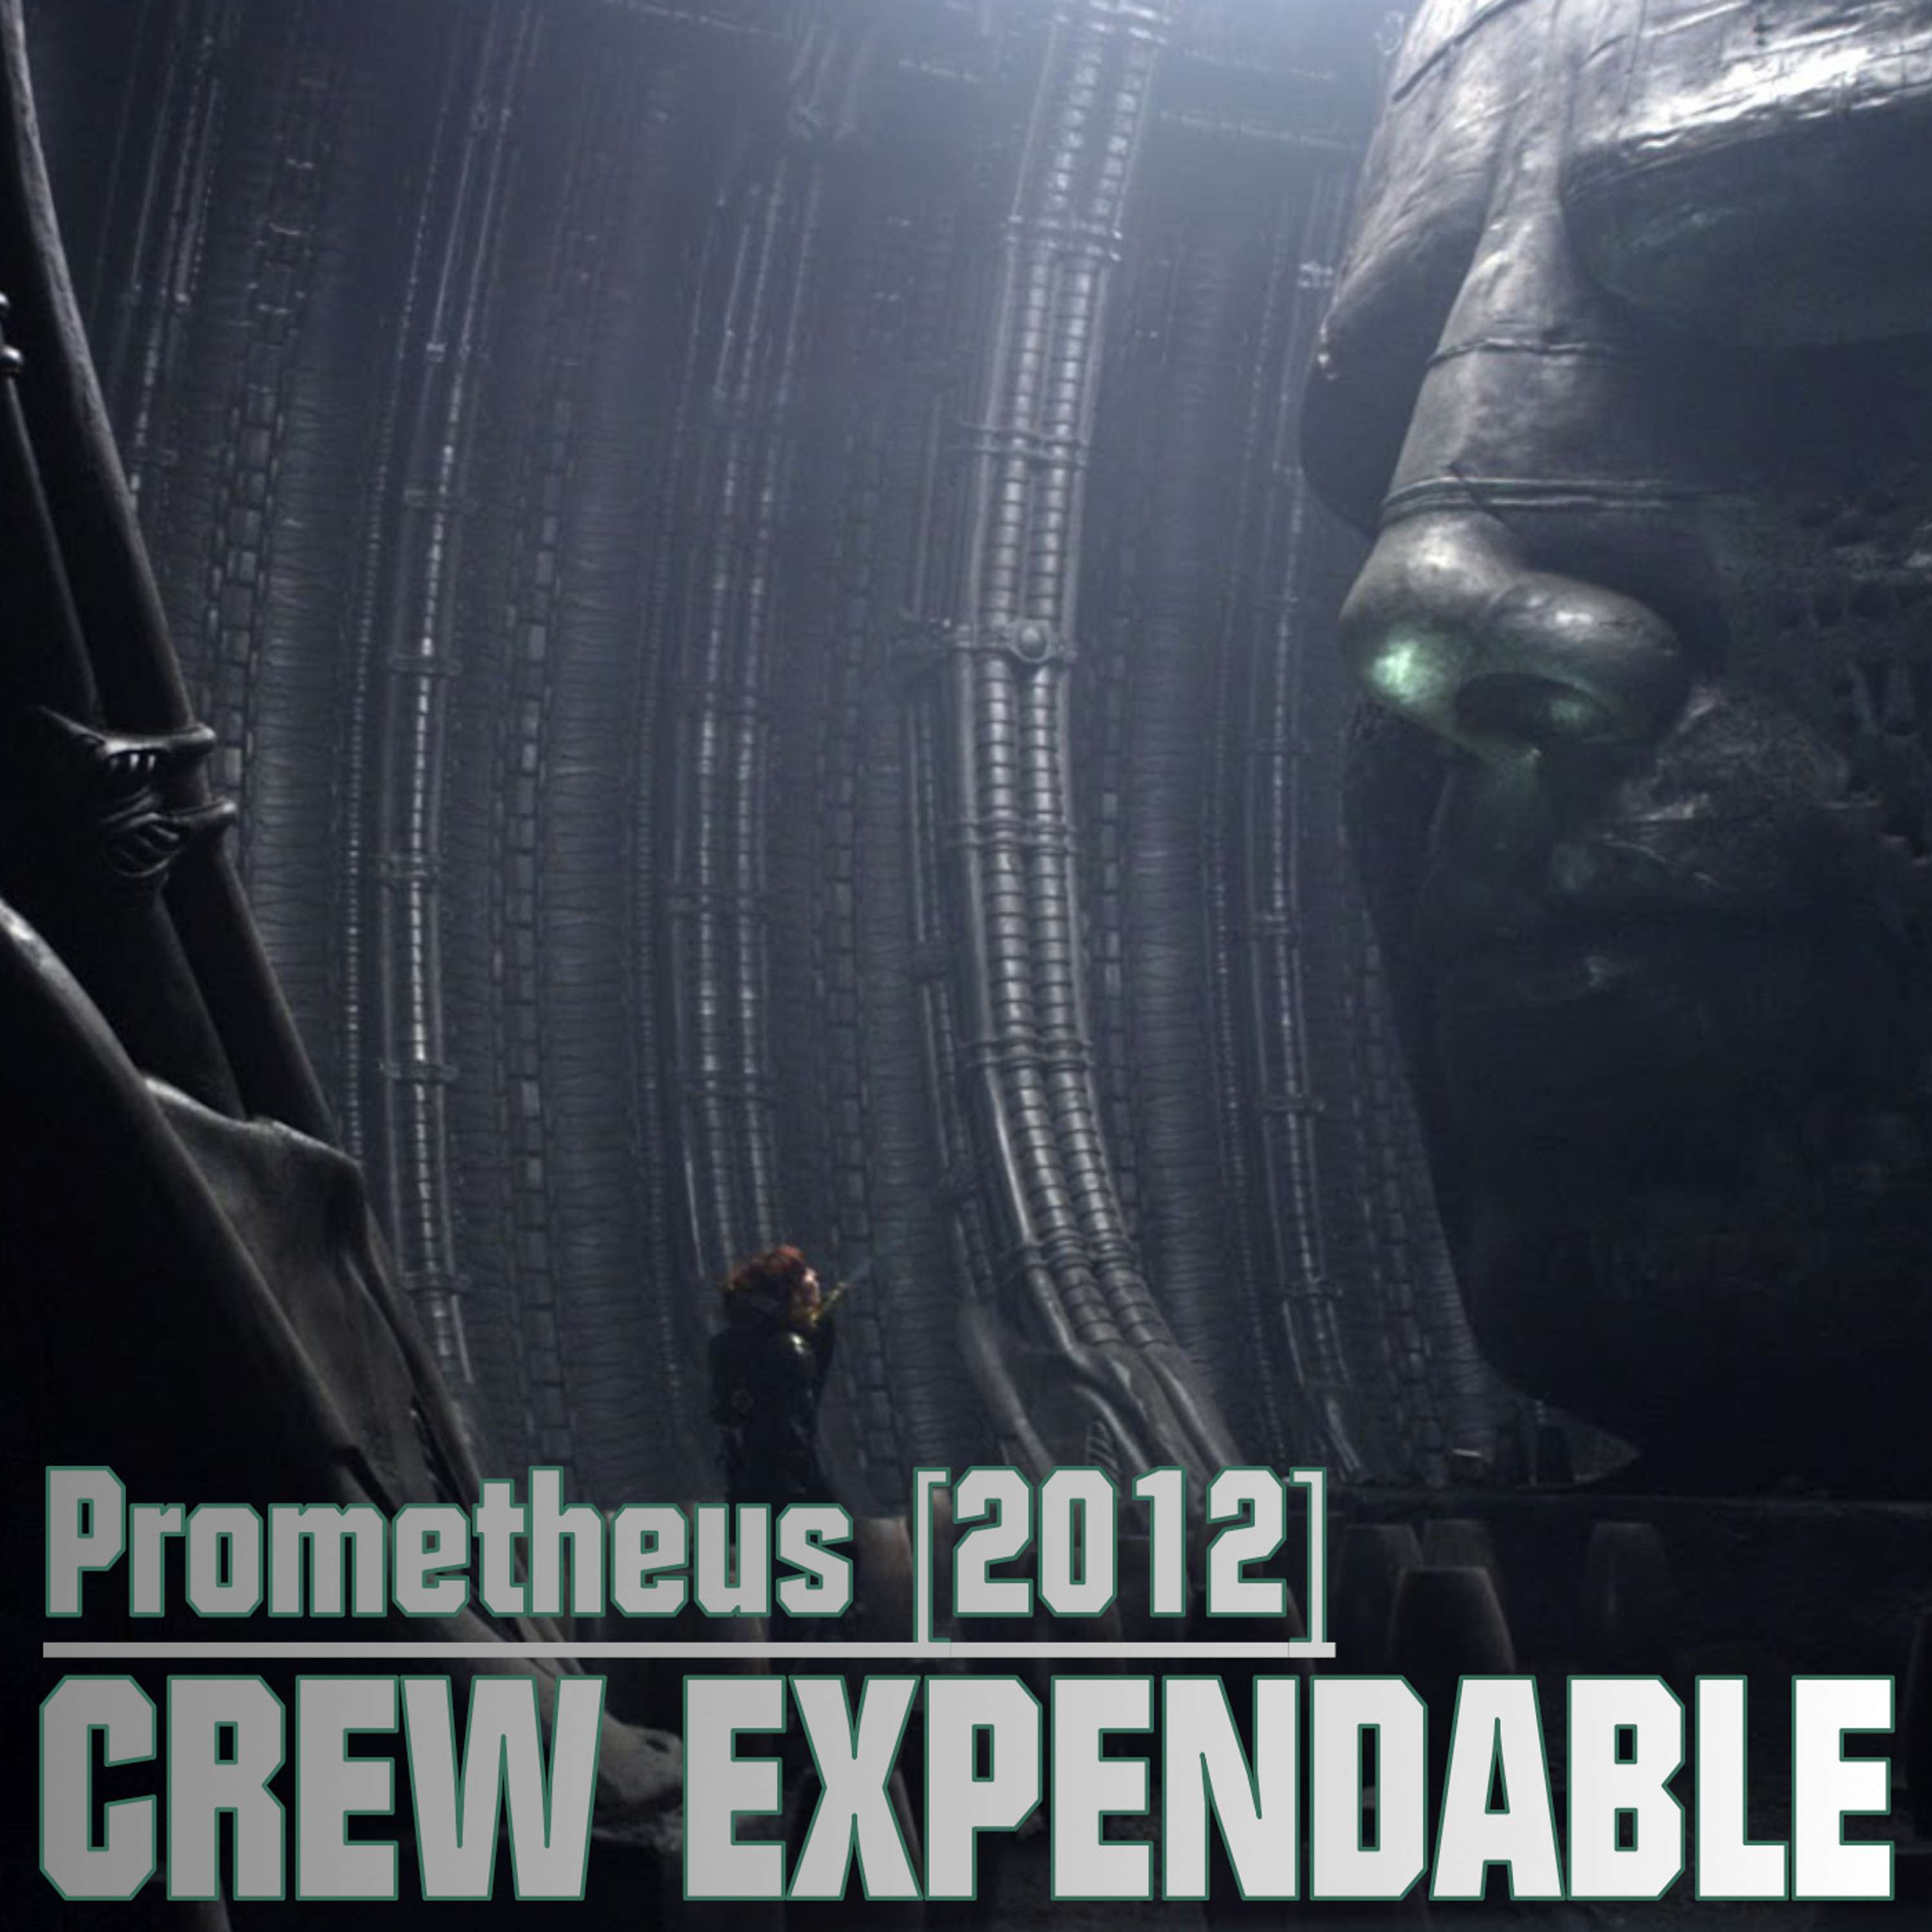 Discussing Prometheus (2012)